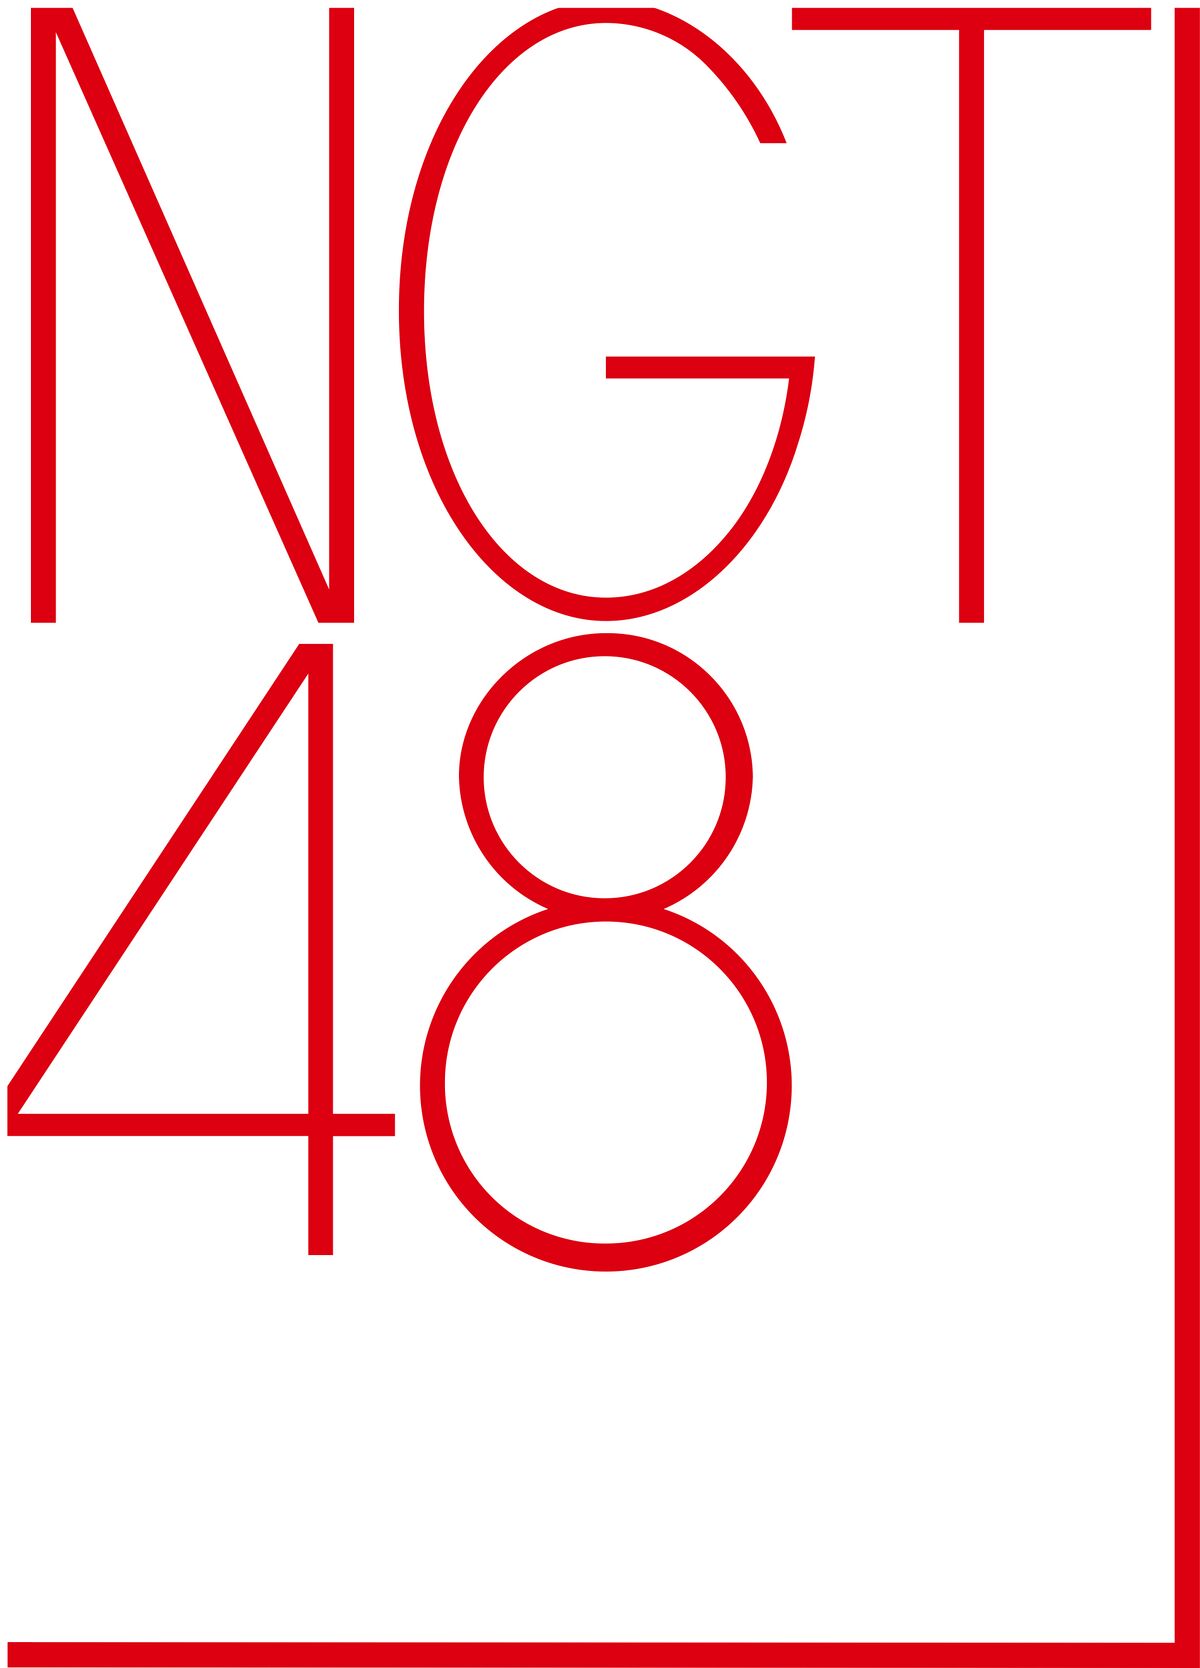 NGT48 - エケペディア